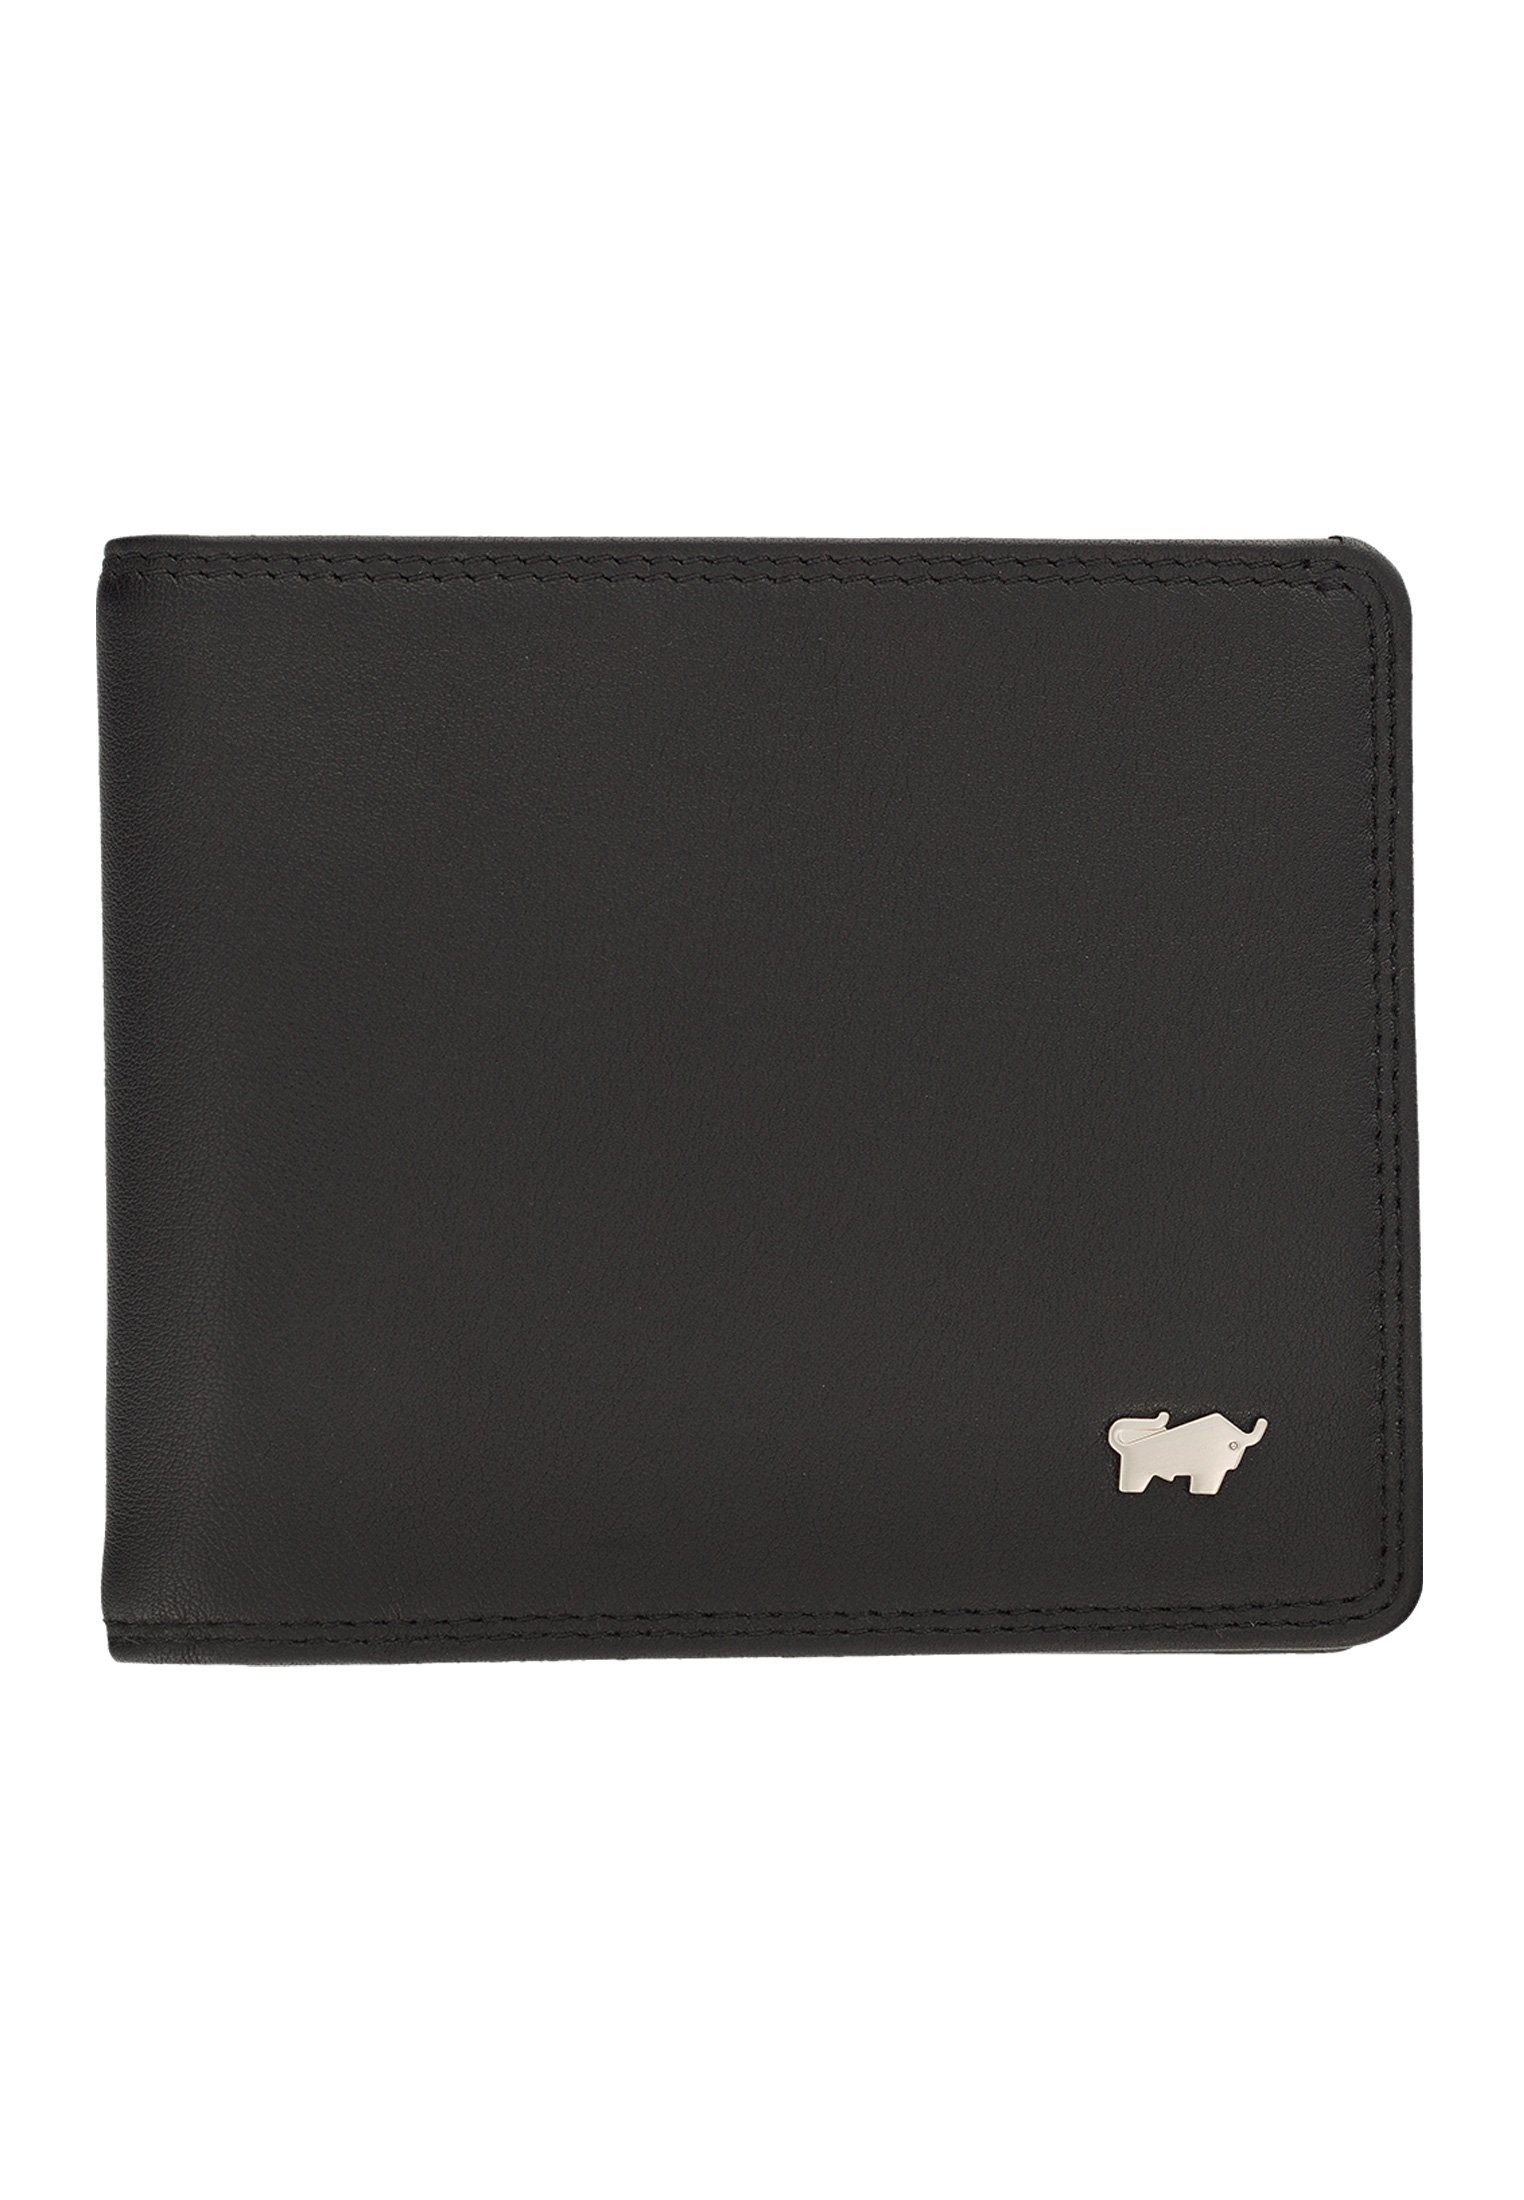 GOLF Kartenfächern 8 8CS, schwarz mit Geldklammer und Braun Geldbörse Dollarclip 2.0 Büffel